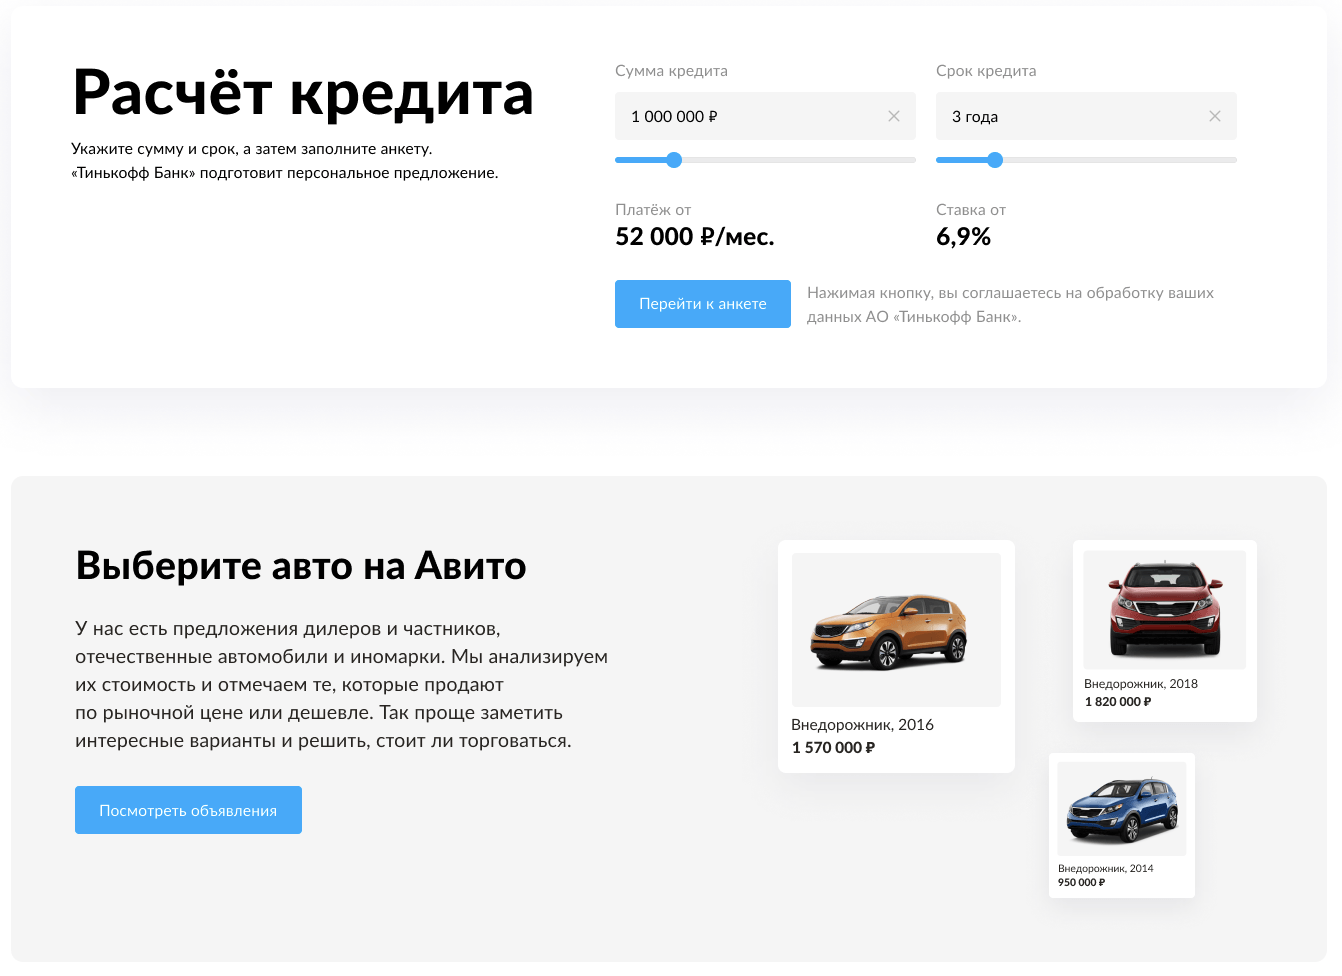 Авито Авто и Тинькофф запустили сервис прямого онлайн-кредитования для покупателей автомобилей